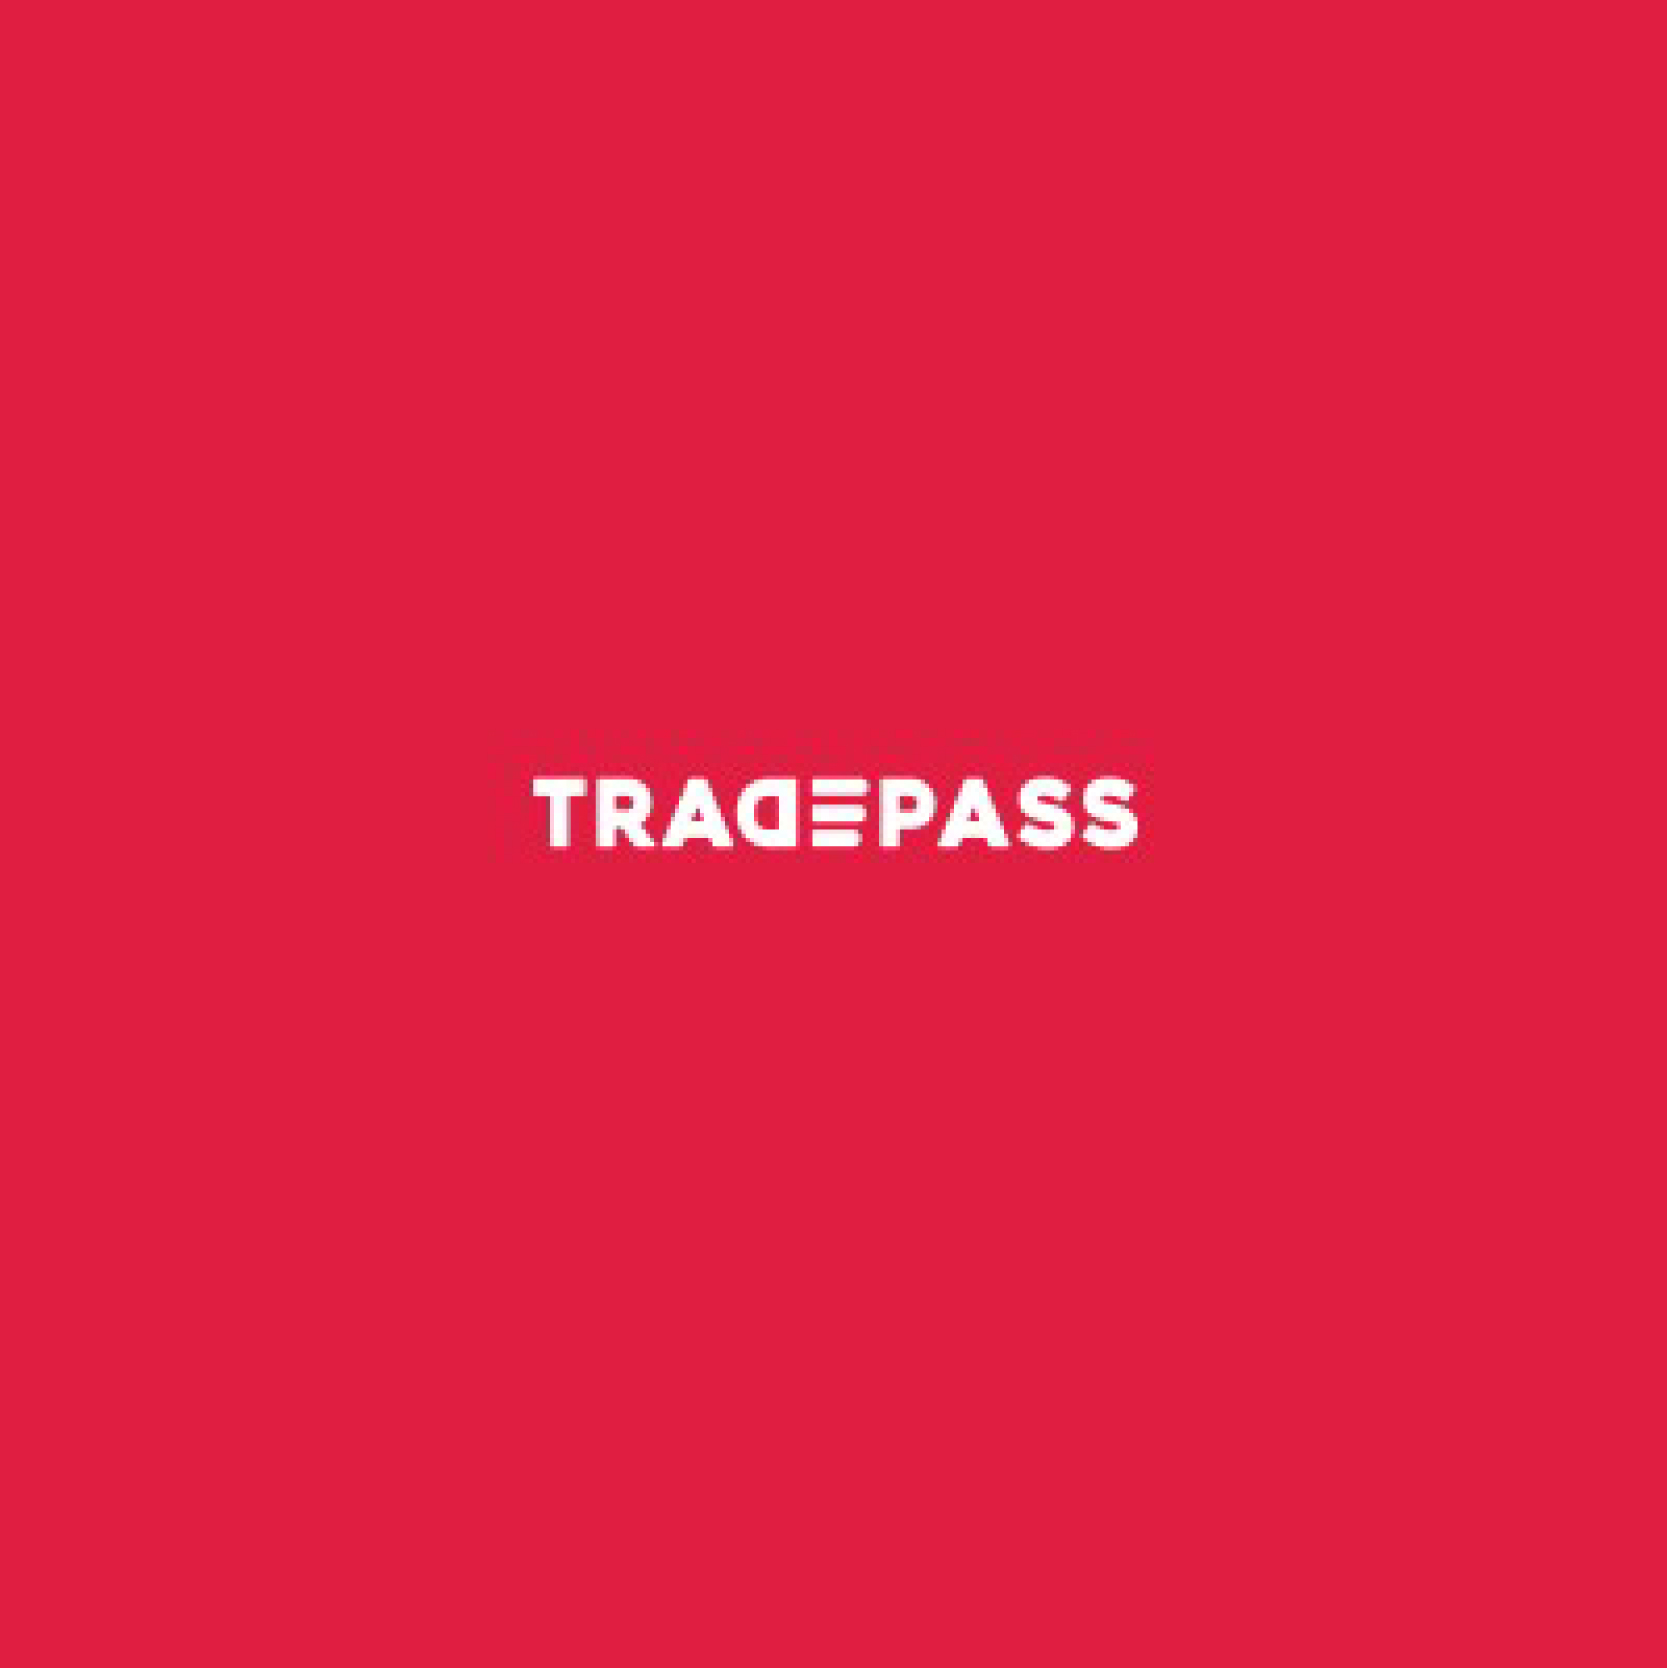 Tradepass